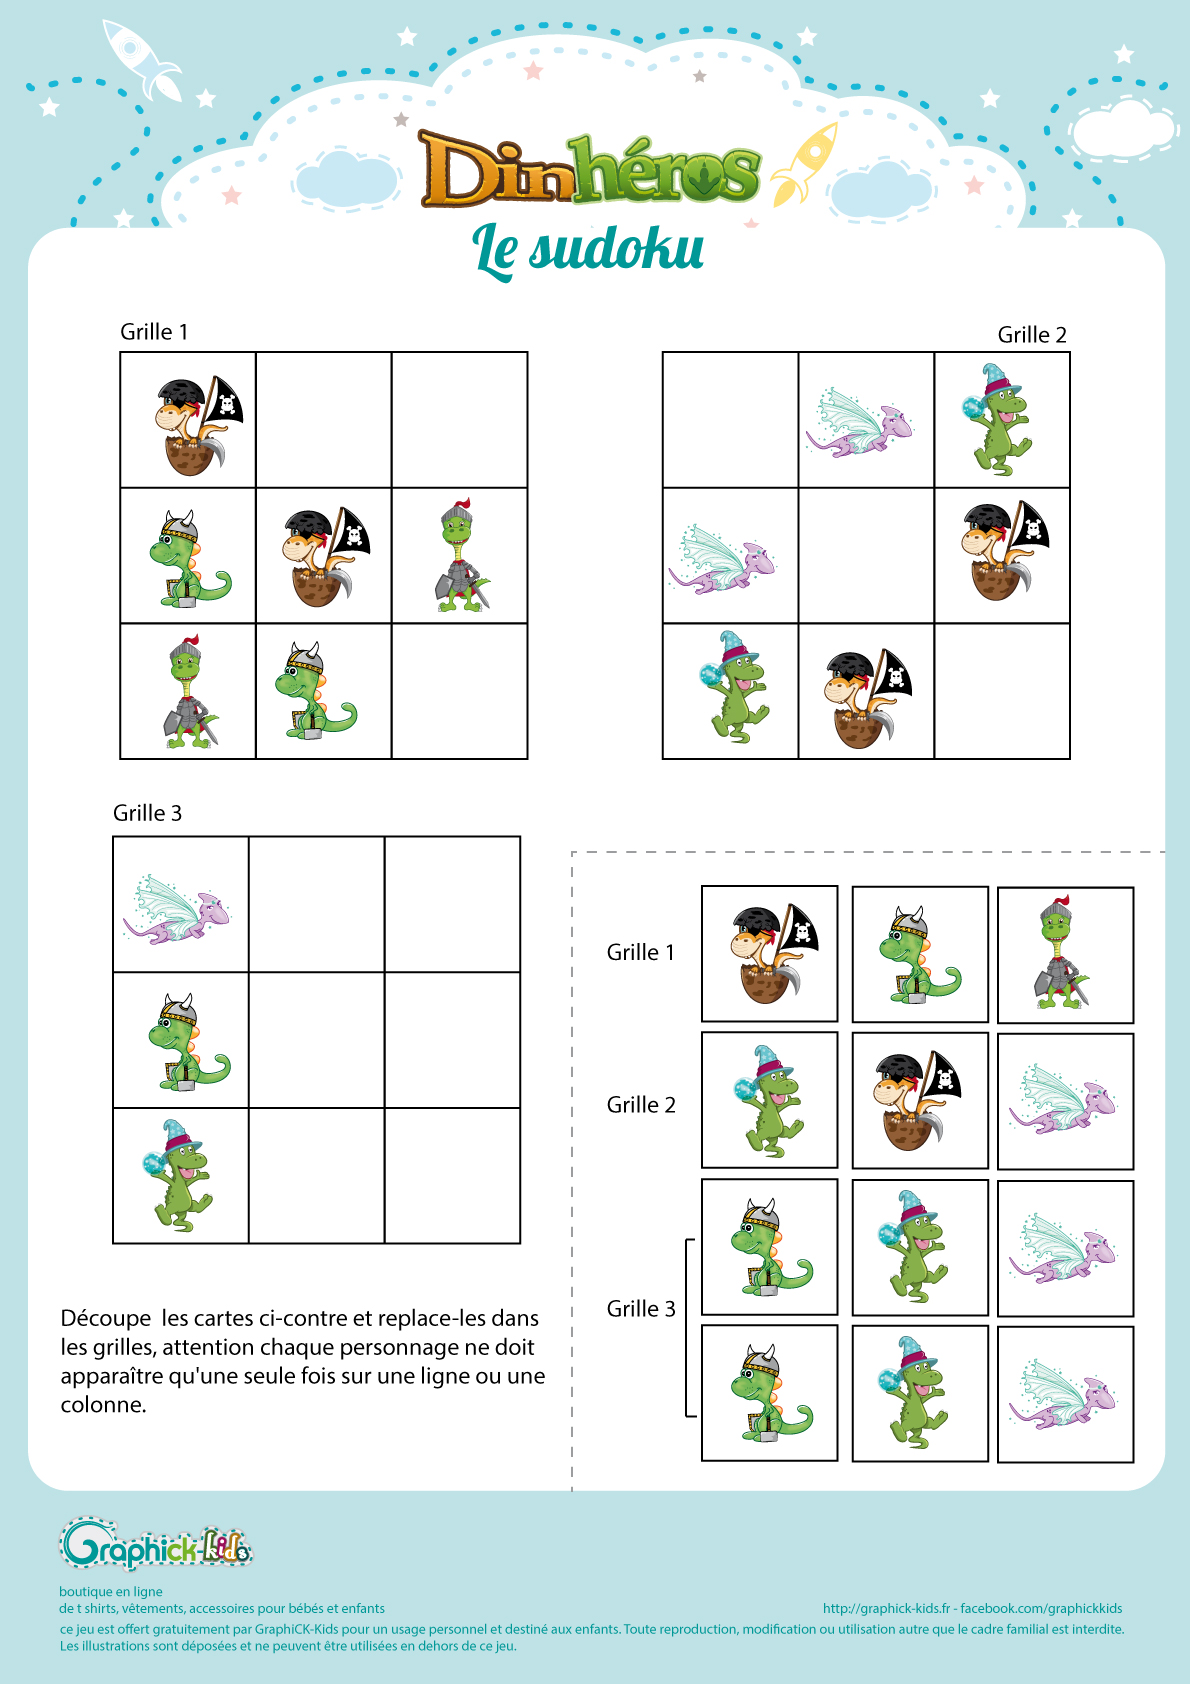 L Activite Du Mercredi Le Sudoku Des Dinheros Graphick Kids